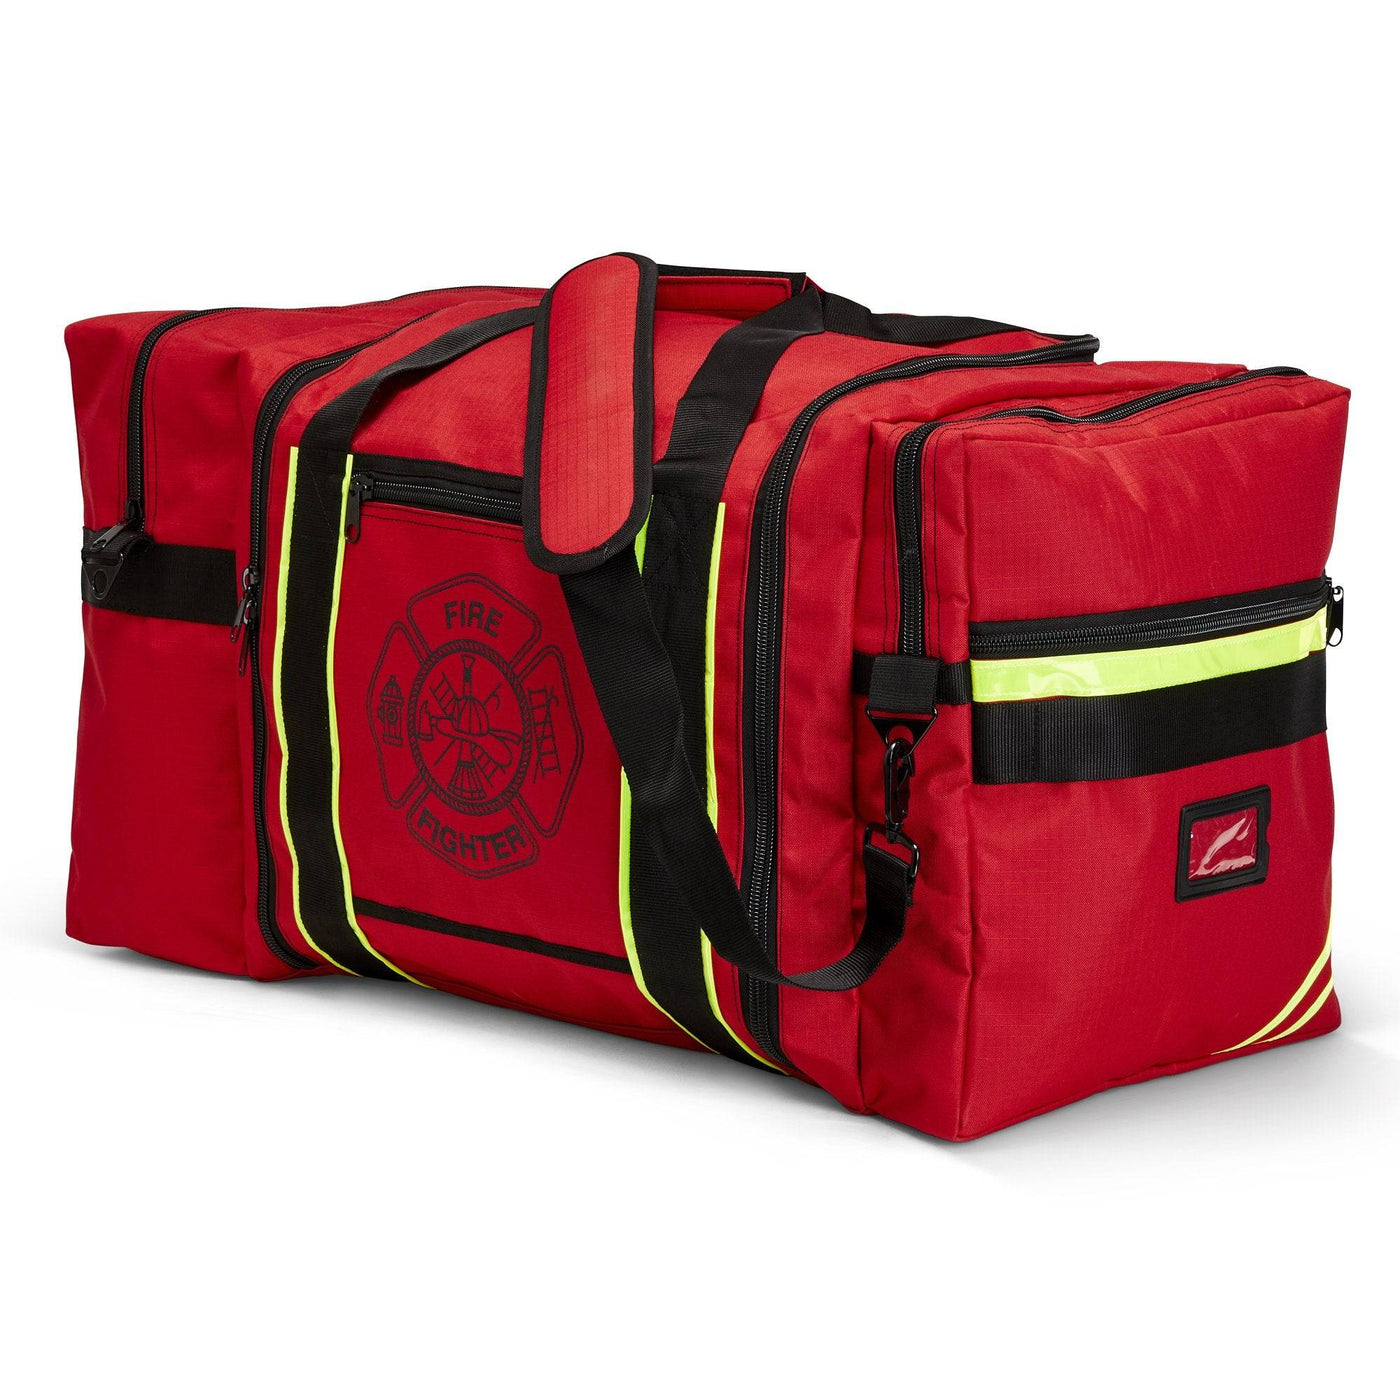 Firefighter Gear Bags LINE2design